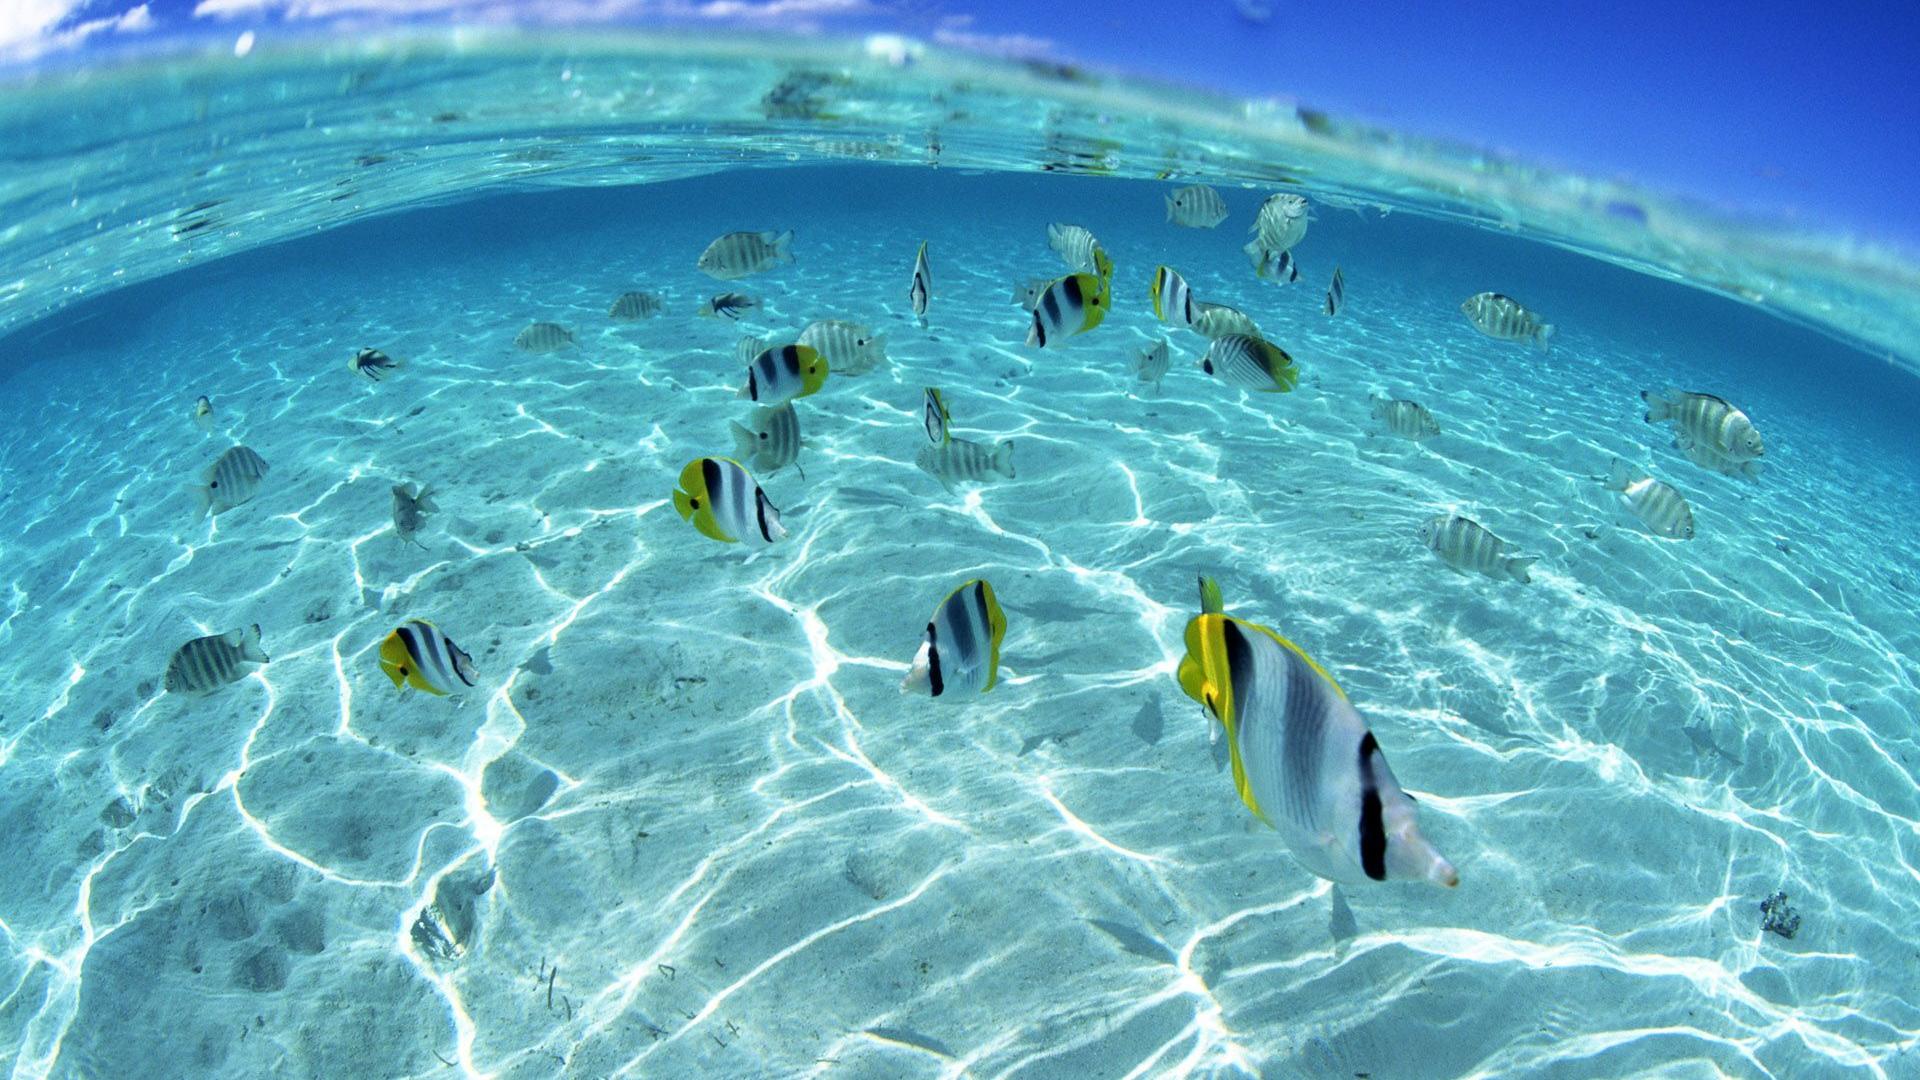 Free Underwater Wallpaper Downloads 400 Underwater Wallpapers for FREE   Wallpaperscom